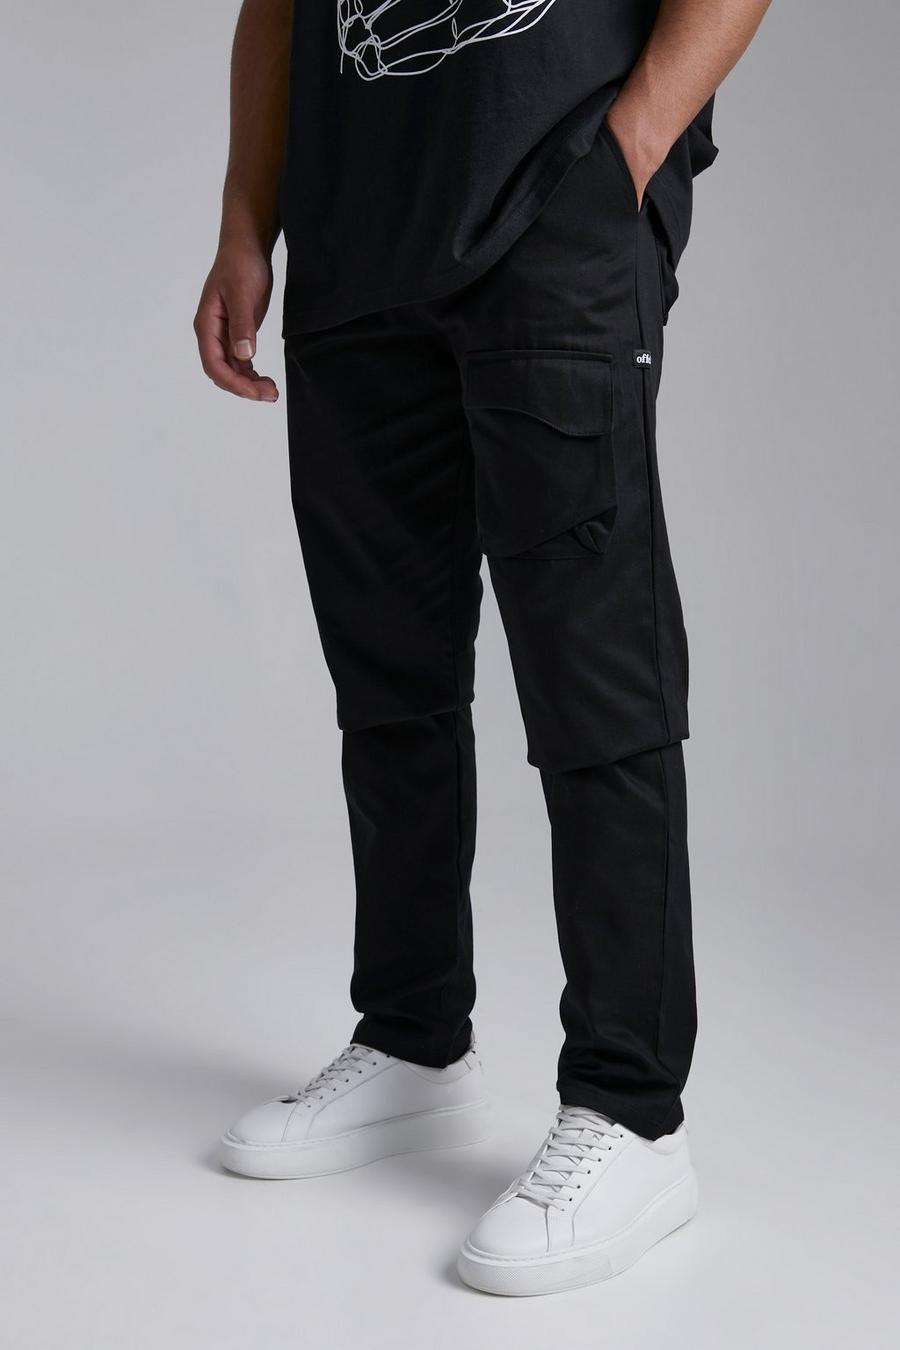 שחור negro מכנסיים בגזרה משוחררת עם כיס מקומר, לגברים גבוהים image number 1